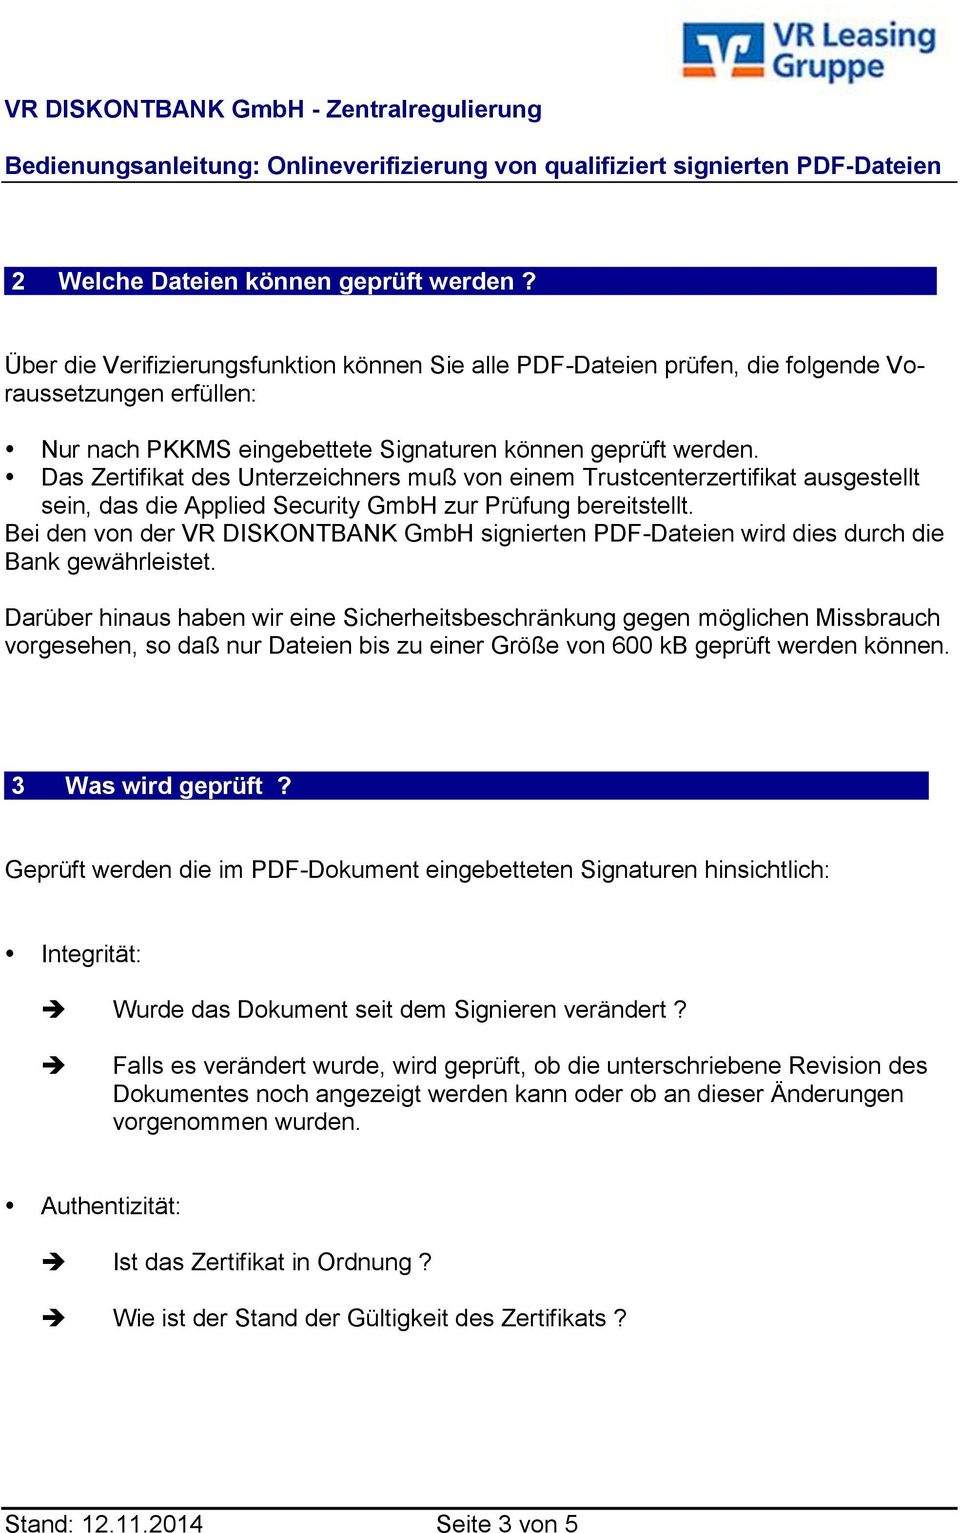 Das Zertifikat des Unterzeichners muß von einem Trustcenterzertifikat ausgestellt sein, das die Applied Security GmbH zur Prüfung bereitstellt.